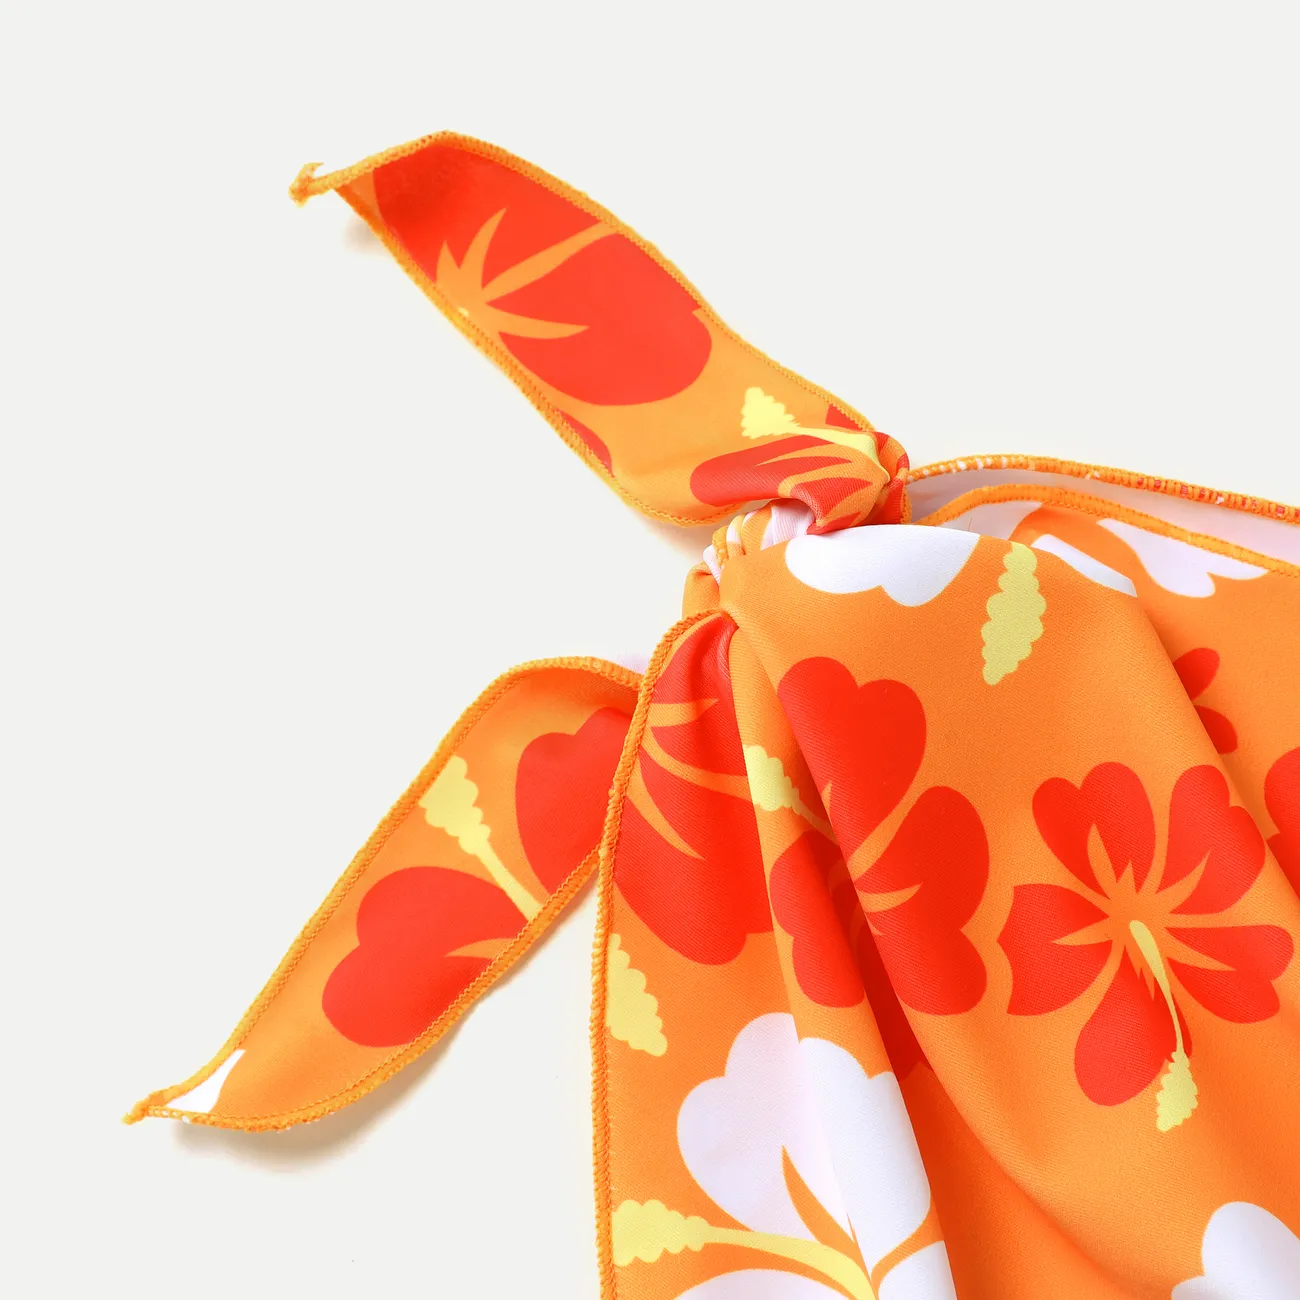  3pcs Kid Girl's Tropical Floral Cold Sleeve Top/ Raceback/Bottom Swimsuit Set  Orange big image 1